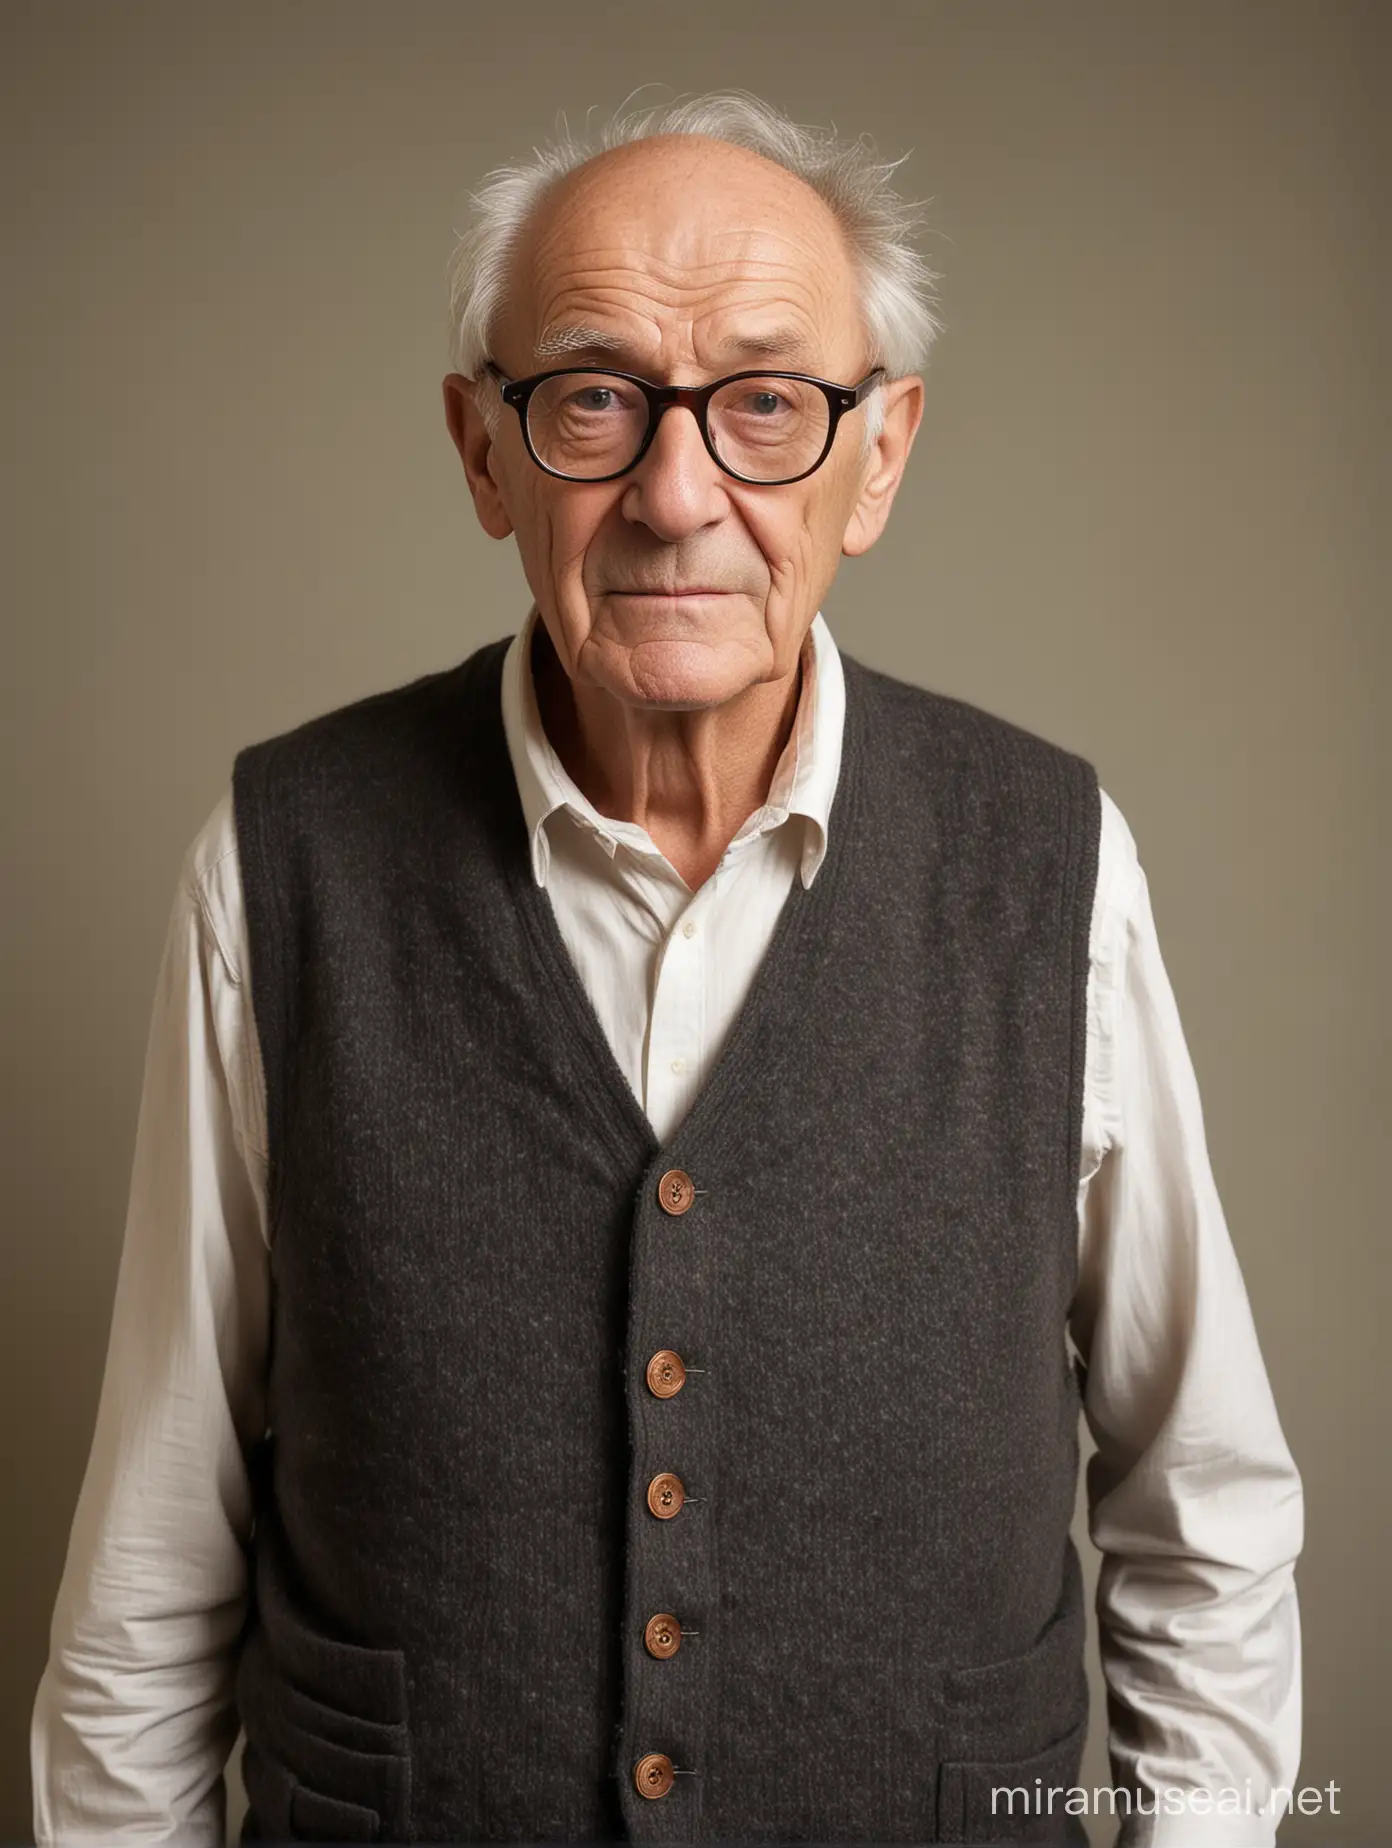 80 years old man, skinny, loose skin, wrinkles, big glasses, wool vest, scapular, school porter